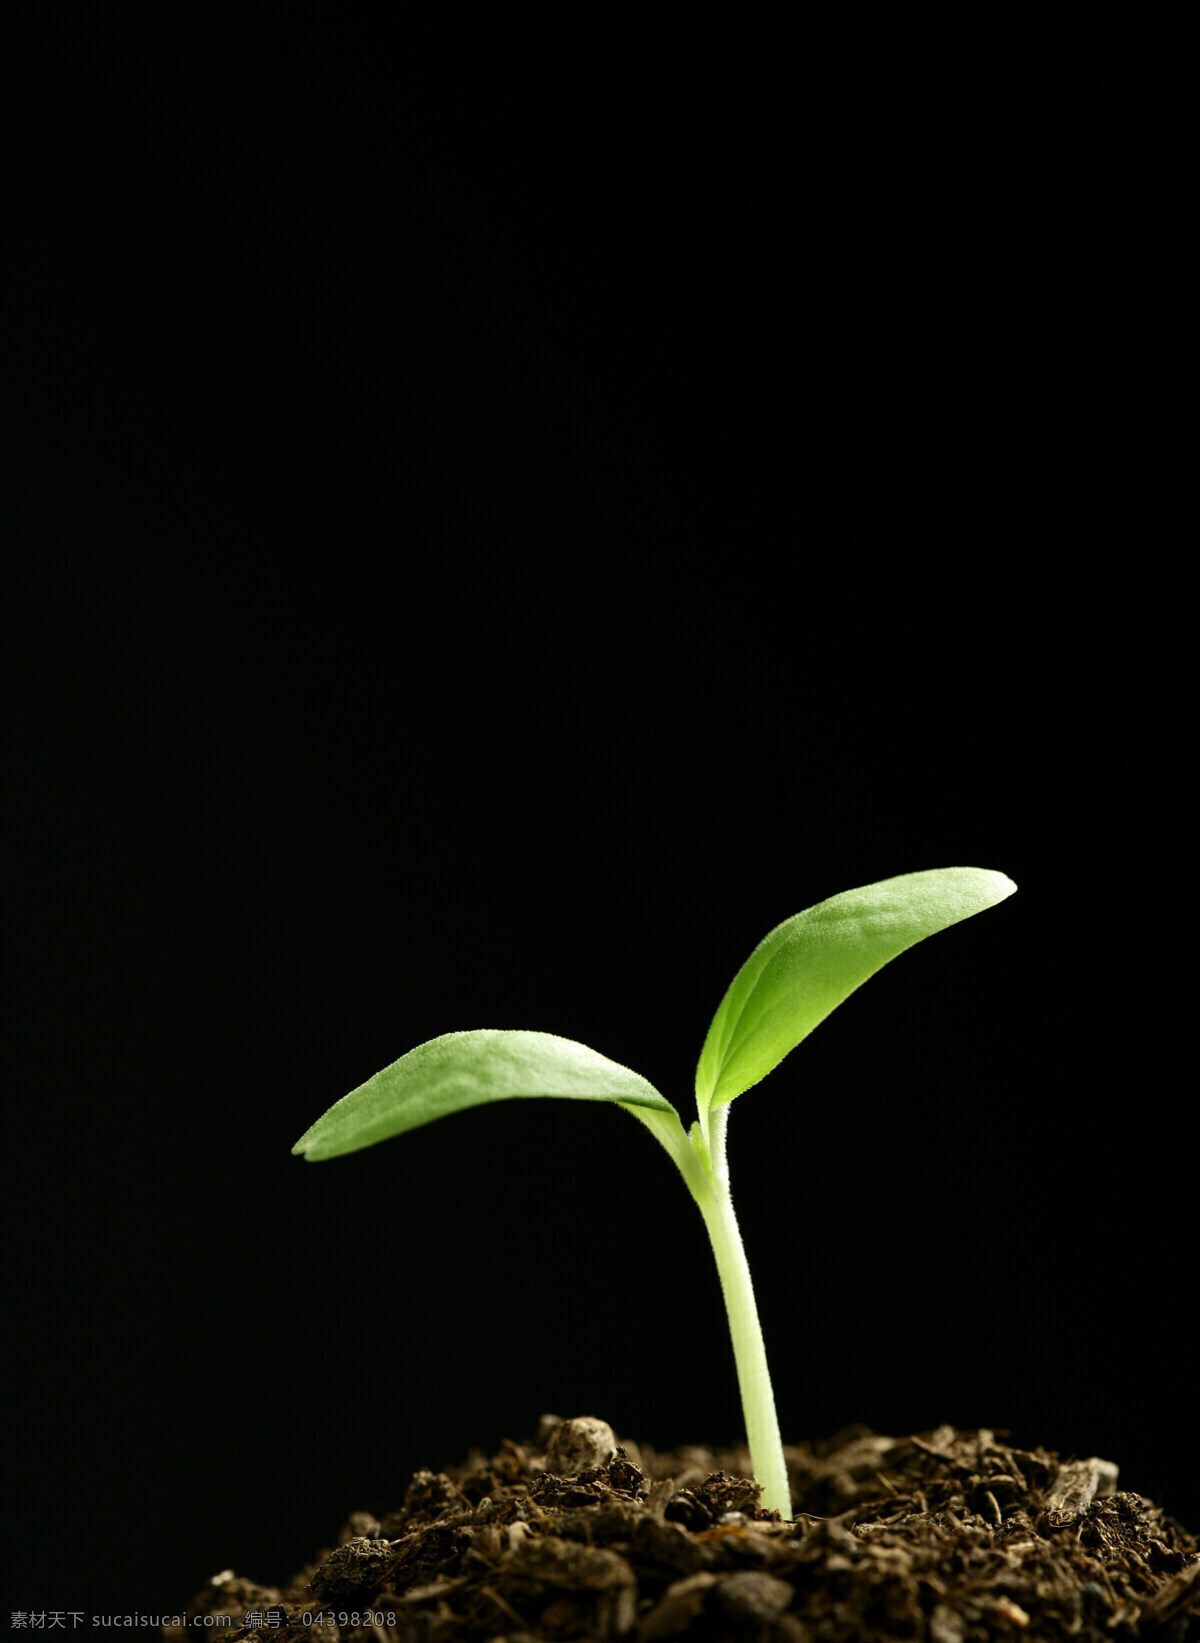 绿色 健康 幼苗 植物 成长 希望 清新 出土 新生 象征 种子 茁状成长 向上 破土 发芽 呵护 培养 土壤 生命力 培育 滋润 高清图片 花草树木 生物世界